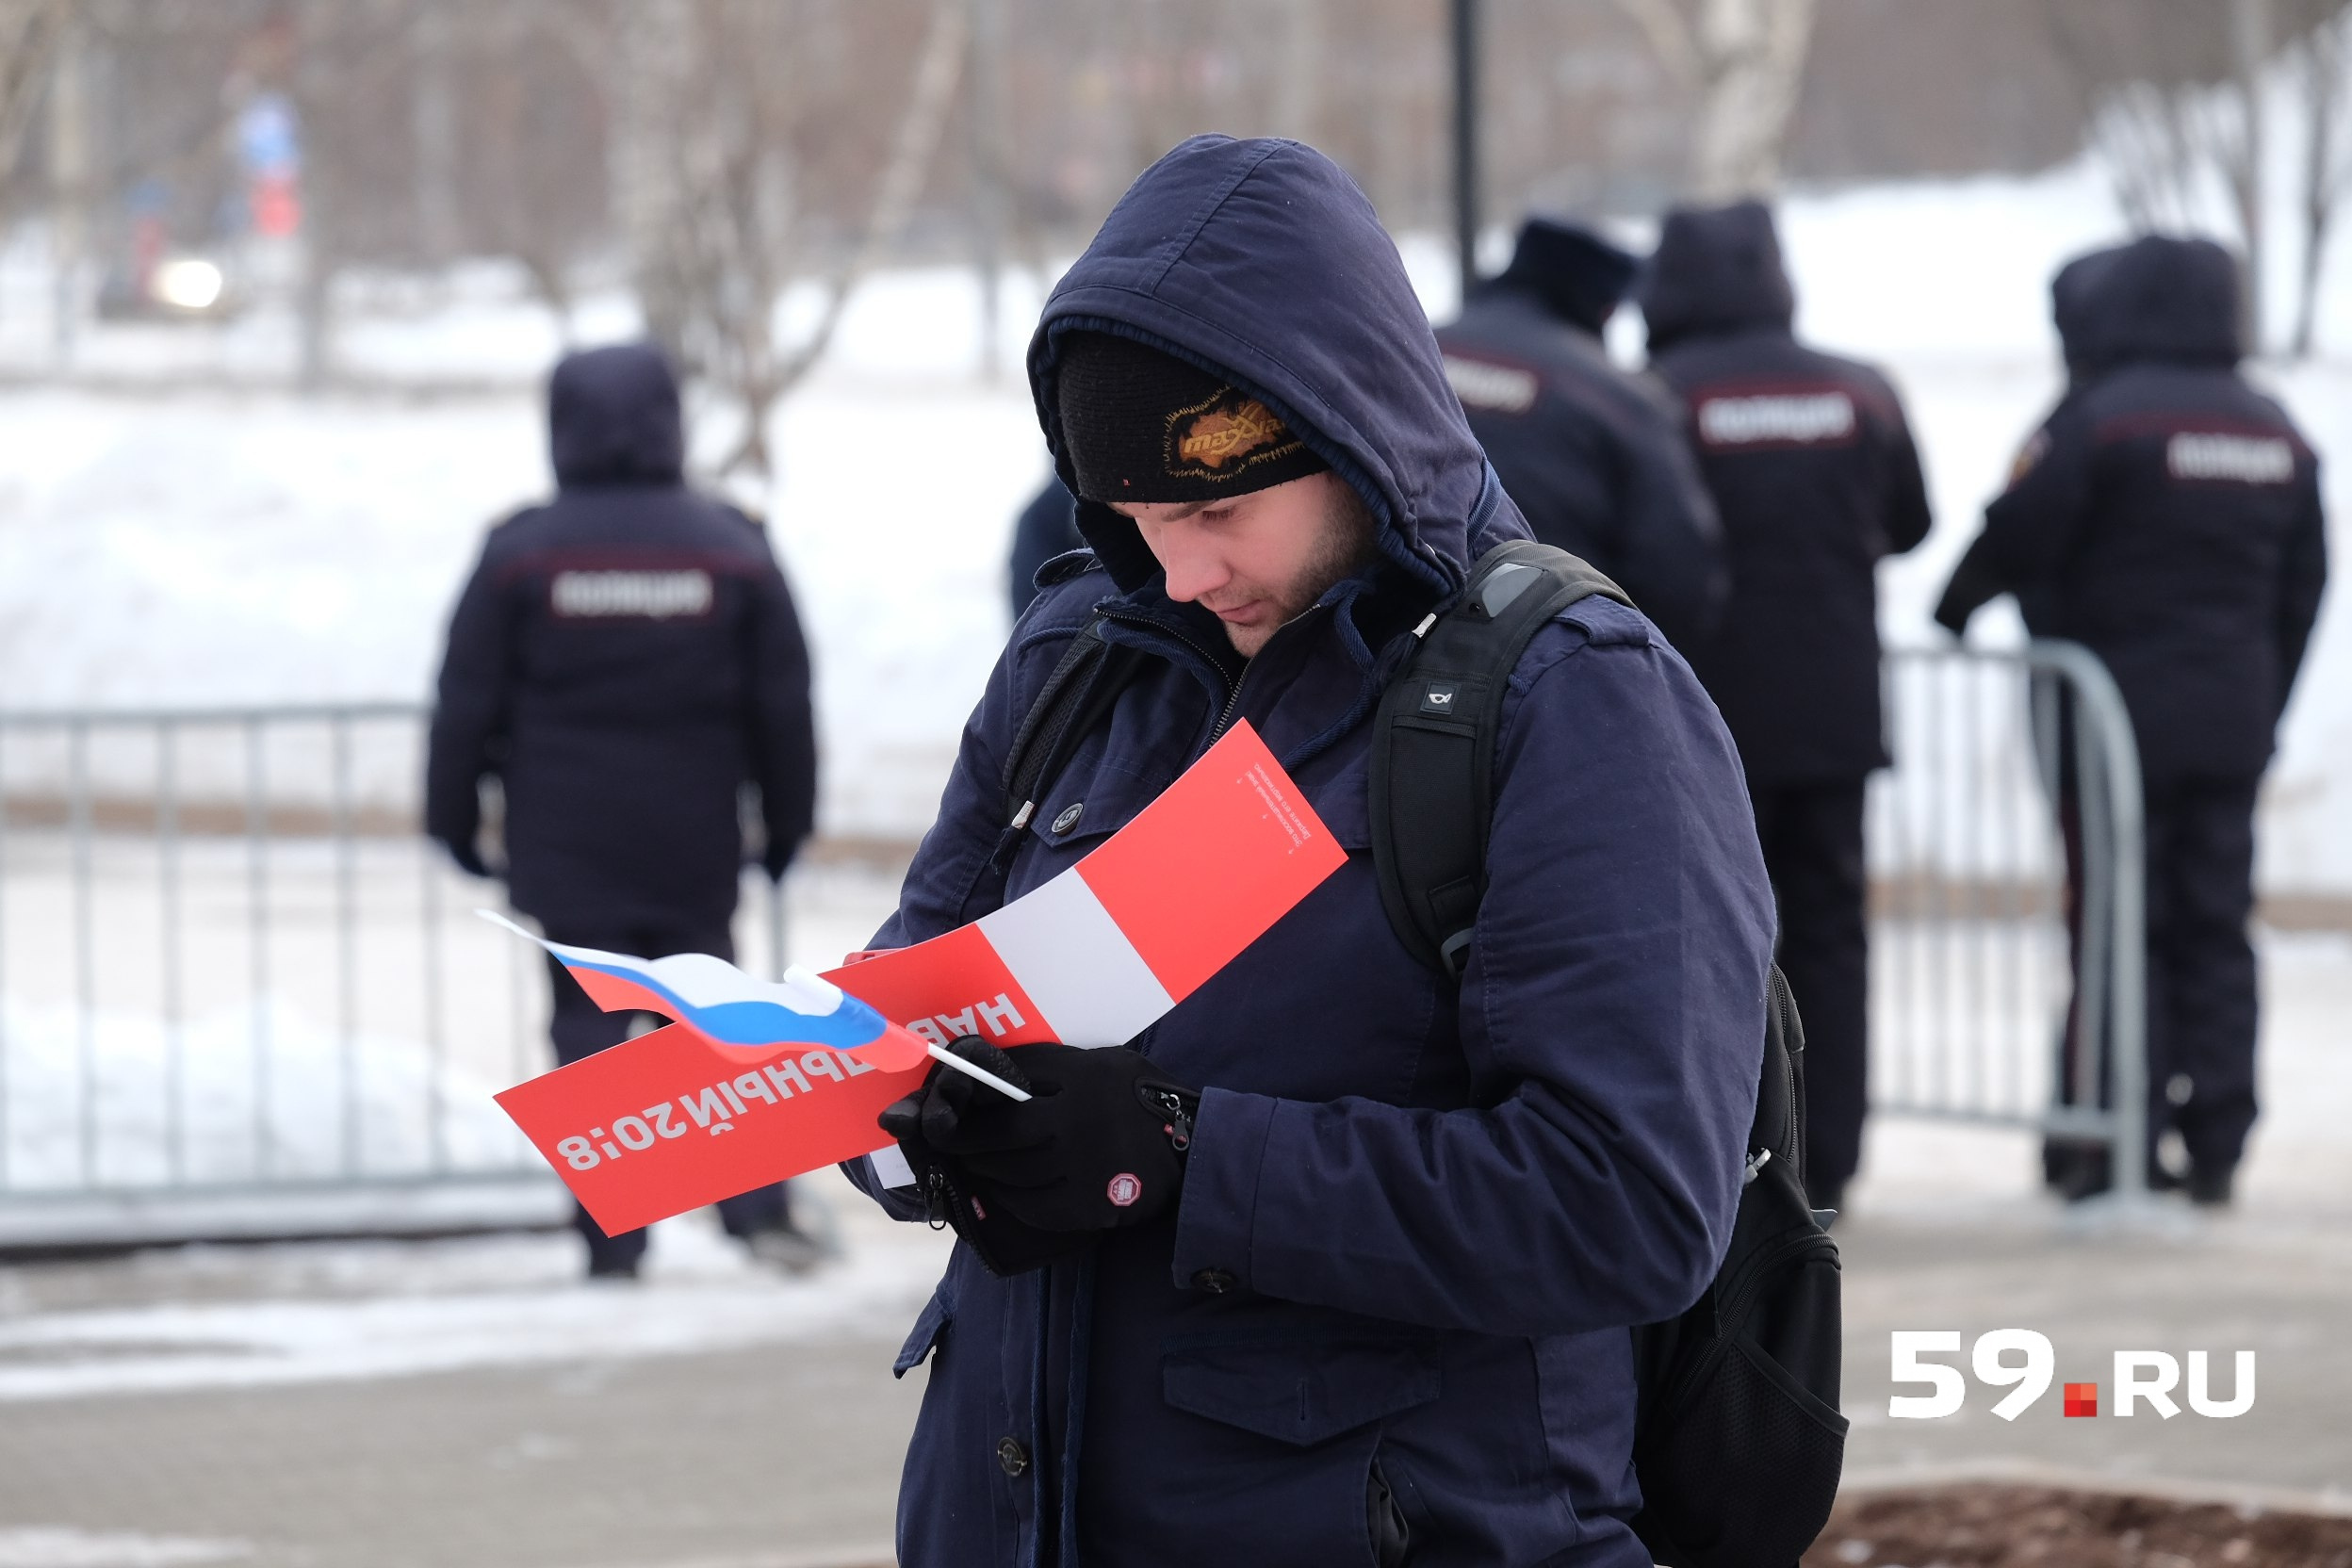 Пермякам раздают листовки с символикой сторонников Навального